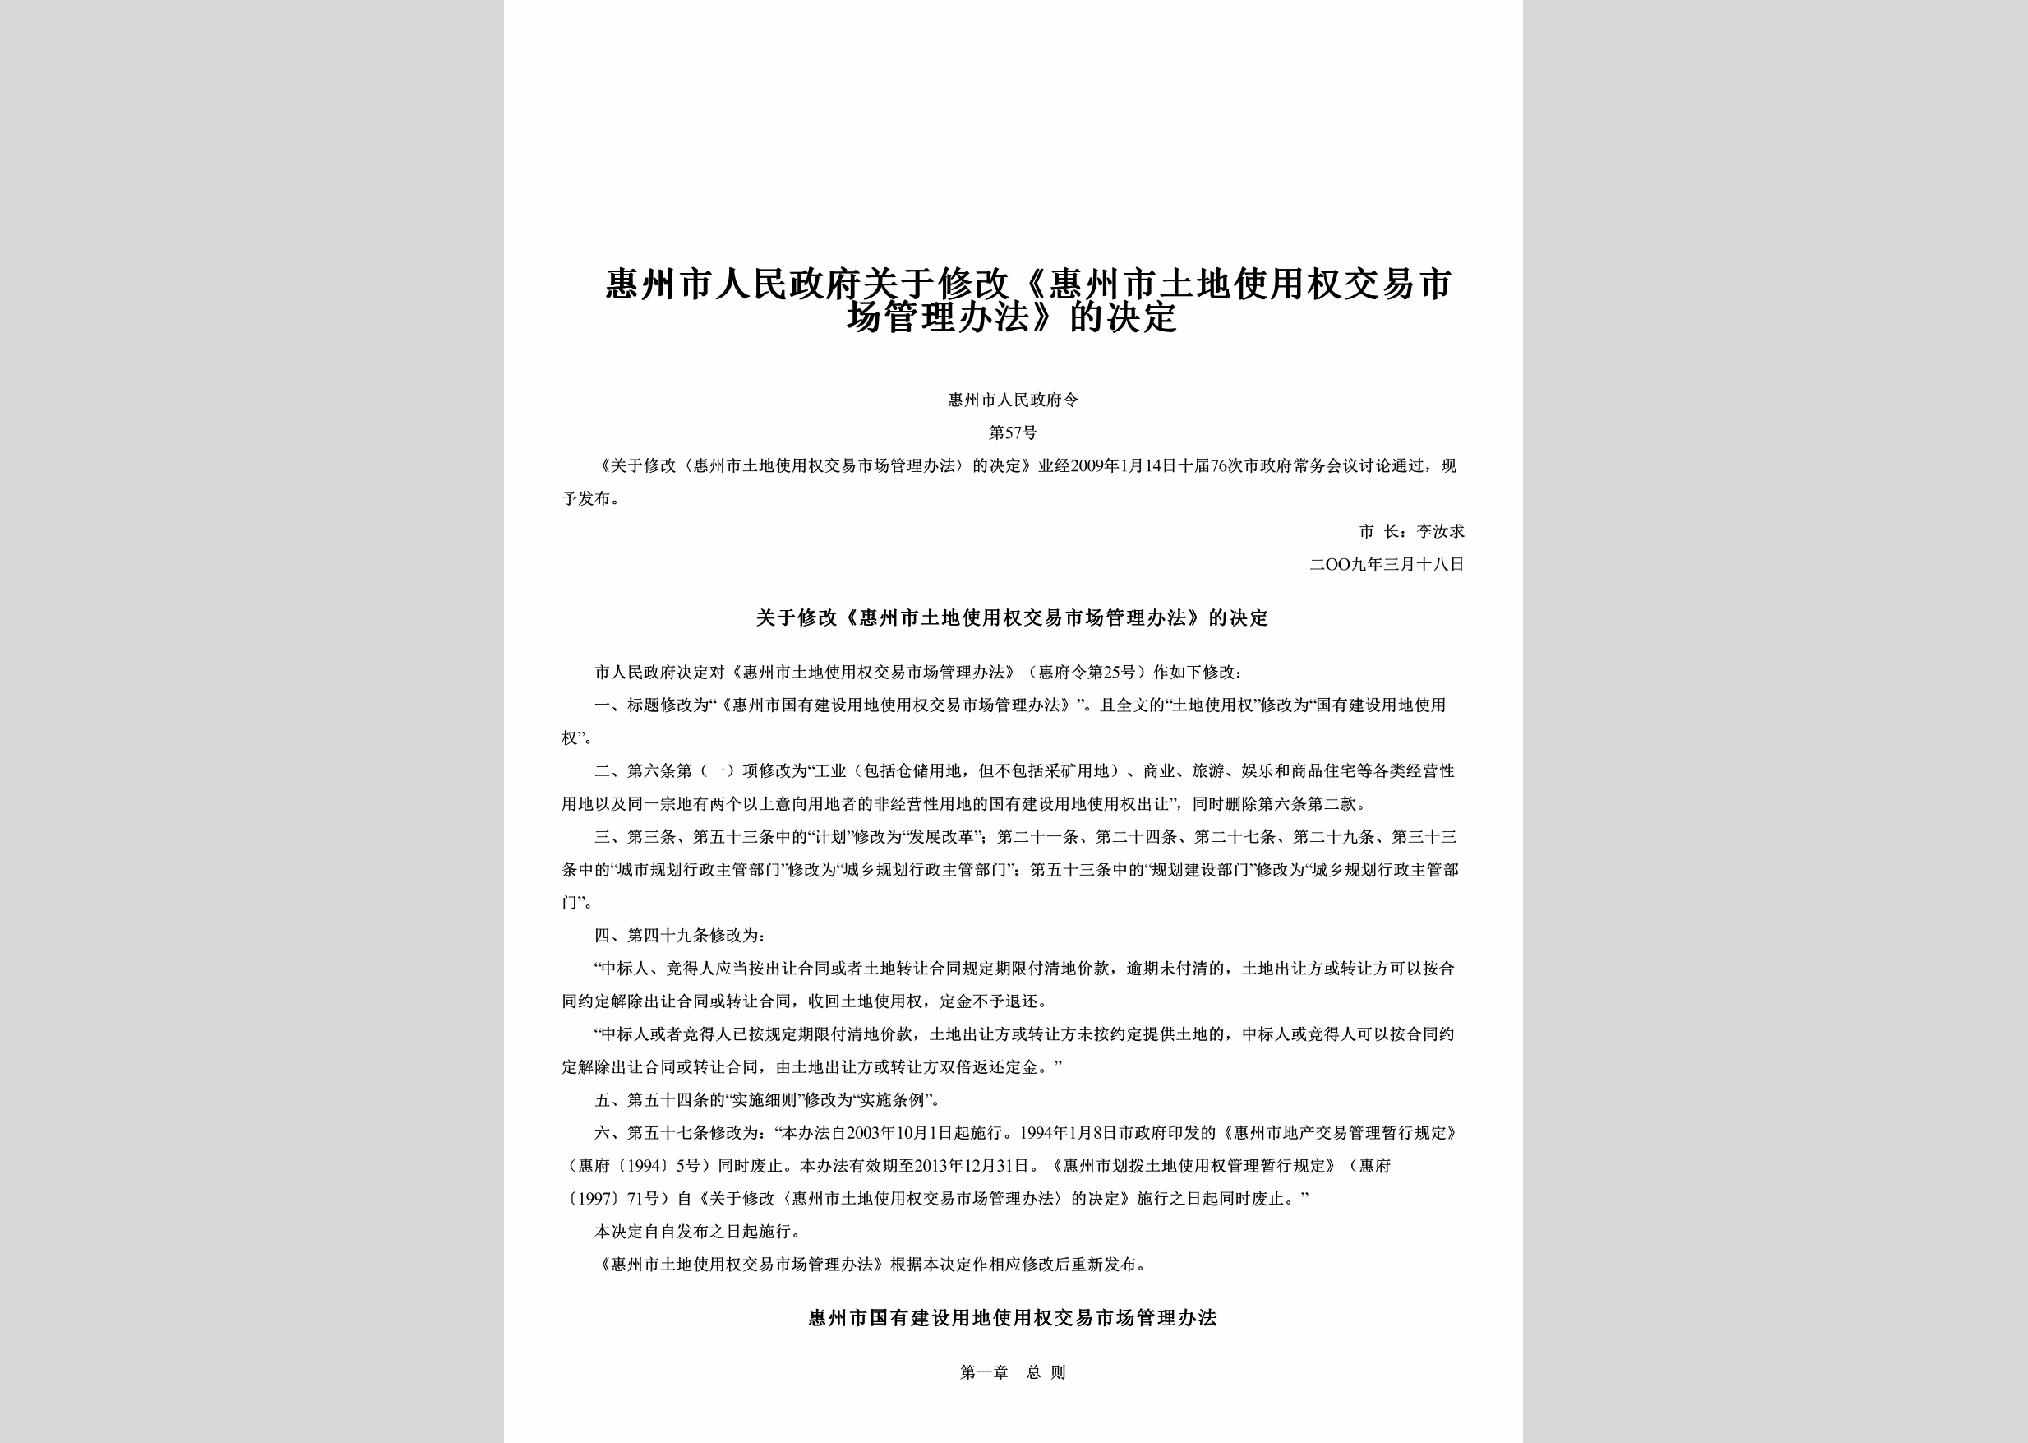 惠州市人民政府令第57号：关于修改《惠州市土地使用权交易市场管理办法》的决定